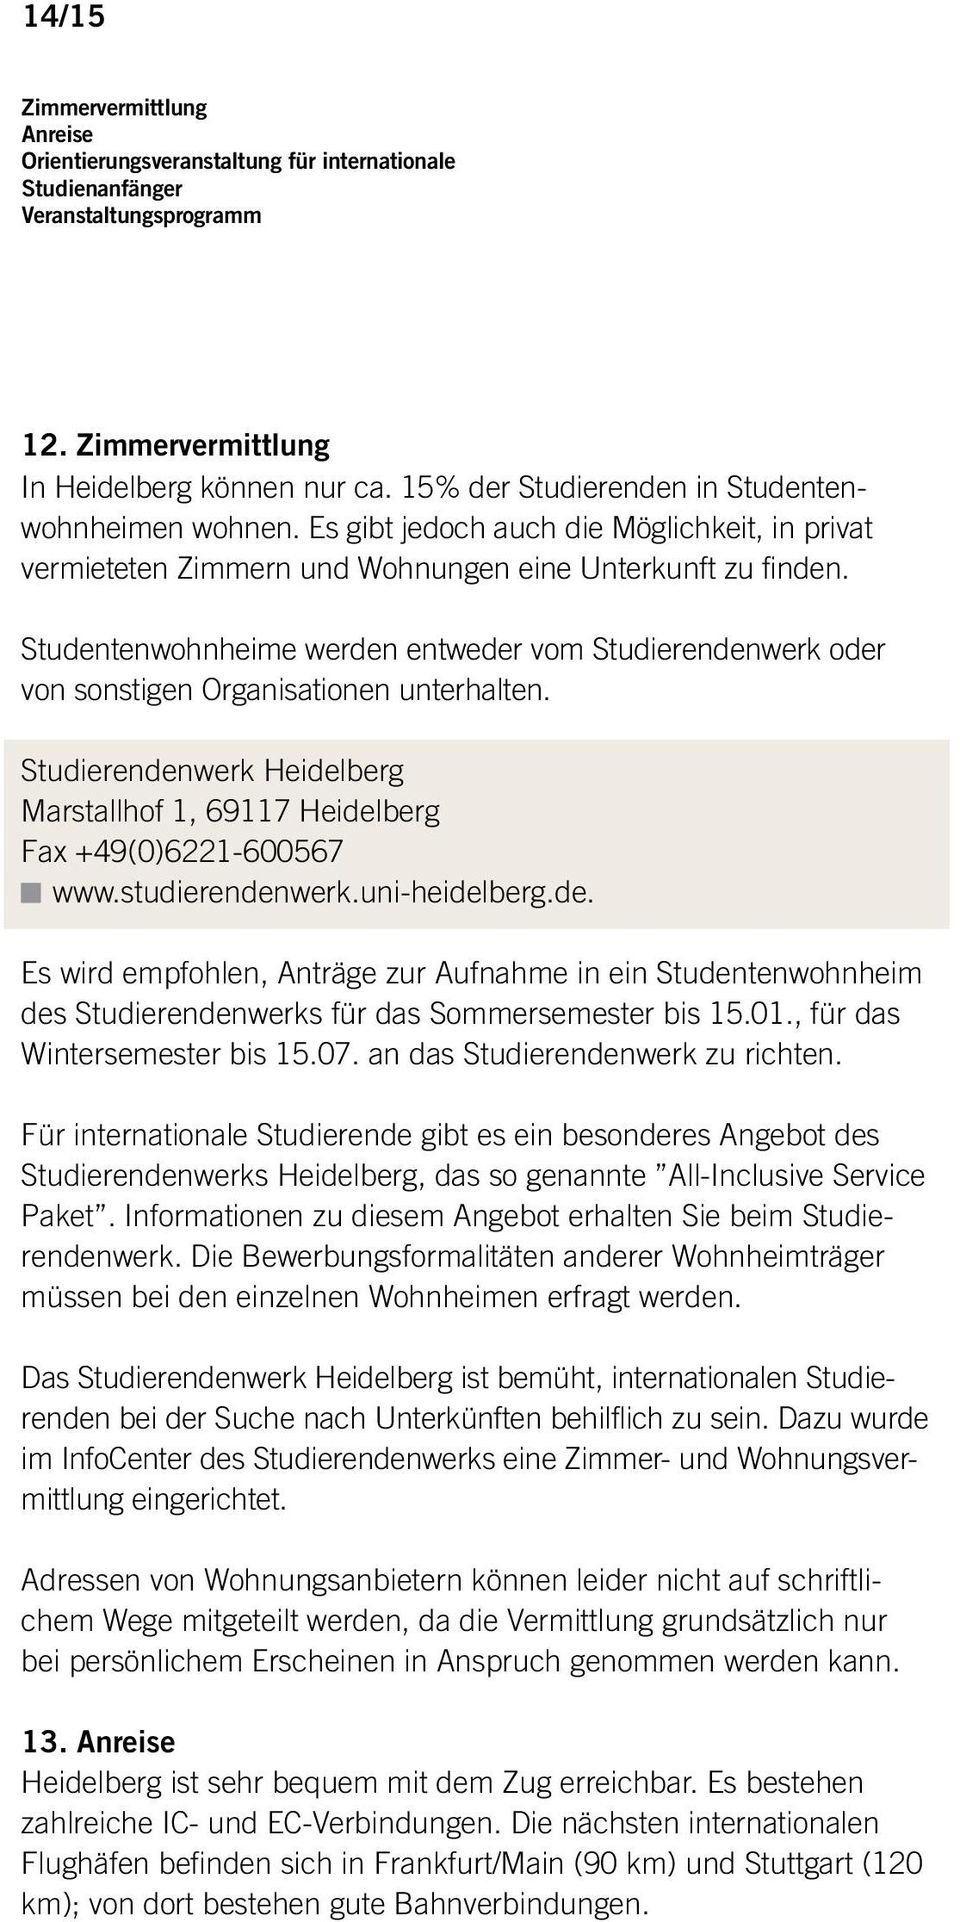 Studentenwohnheime werden entweder vom Studierendenwerk oder von sonstigen Organisationen unterhalten. Studierendenwerk Heidelberg Marstallhof 1, 69117 Heidelberg Fax +49(0)6221-600567 www.